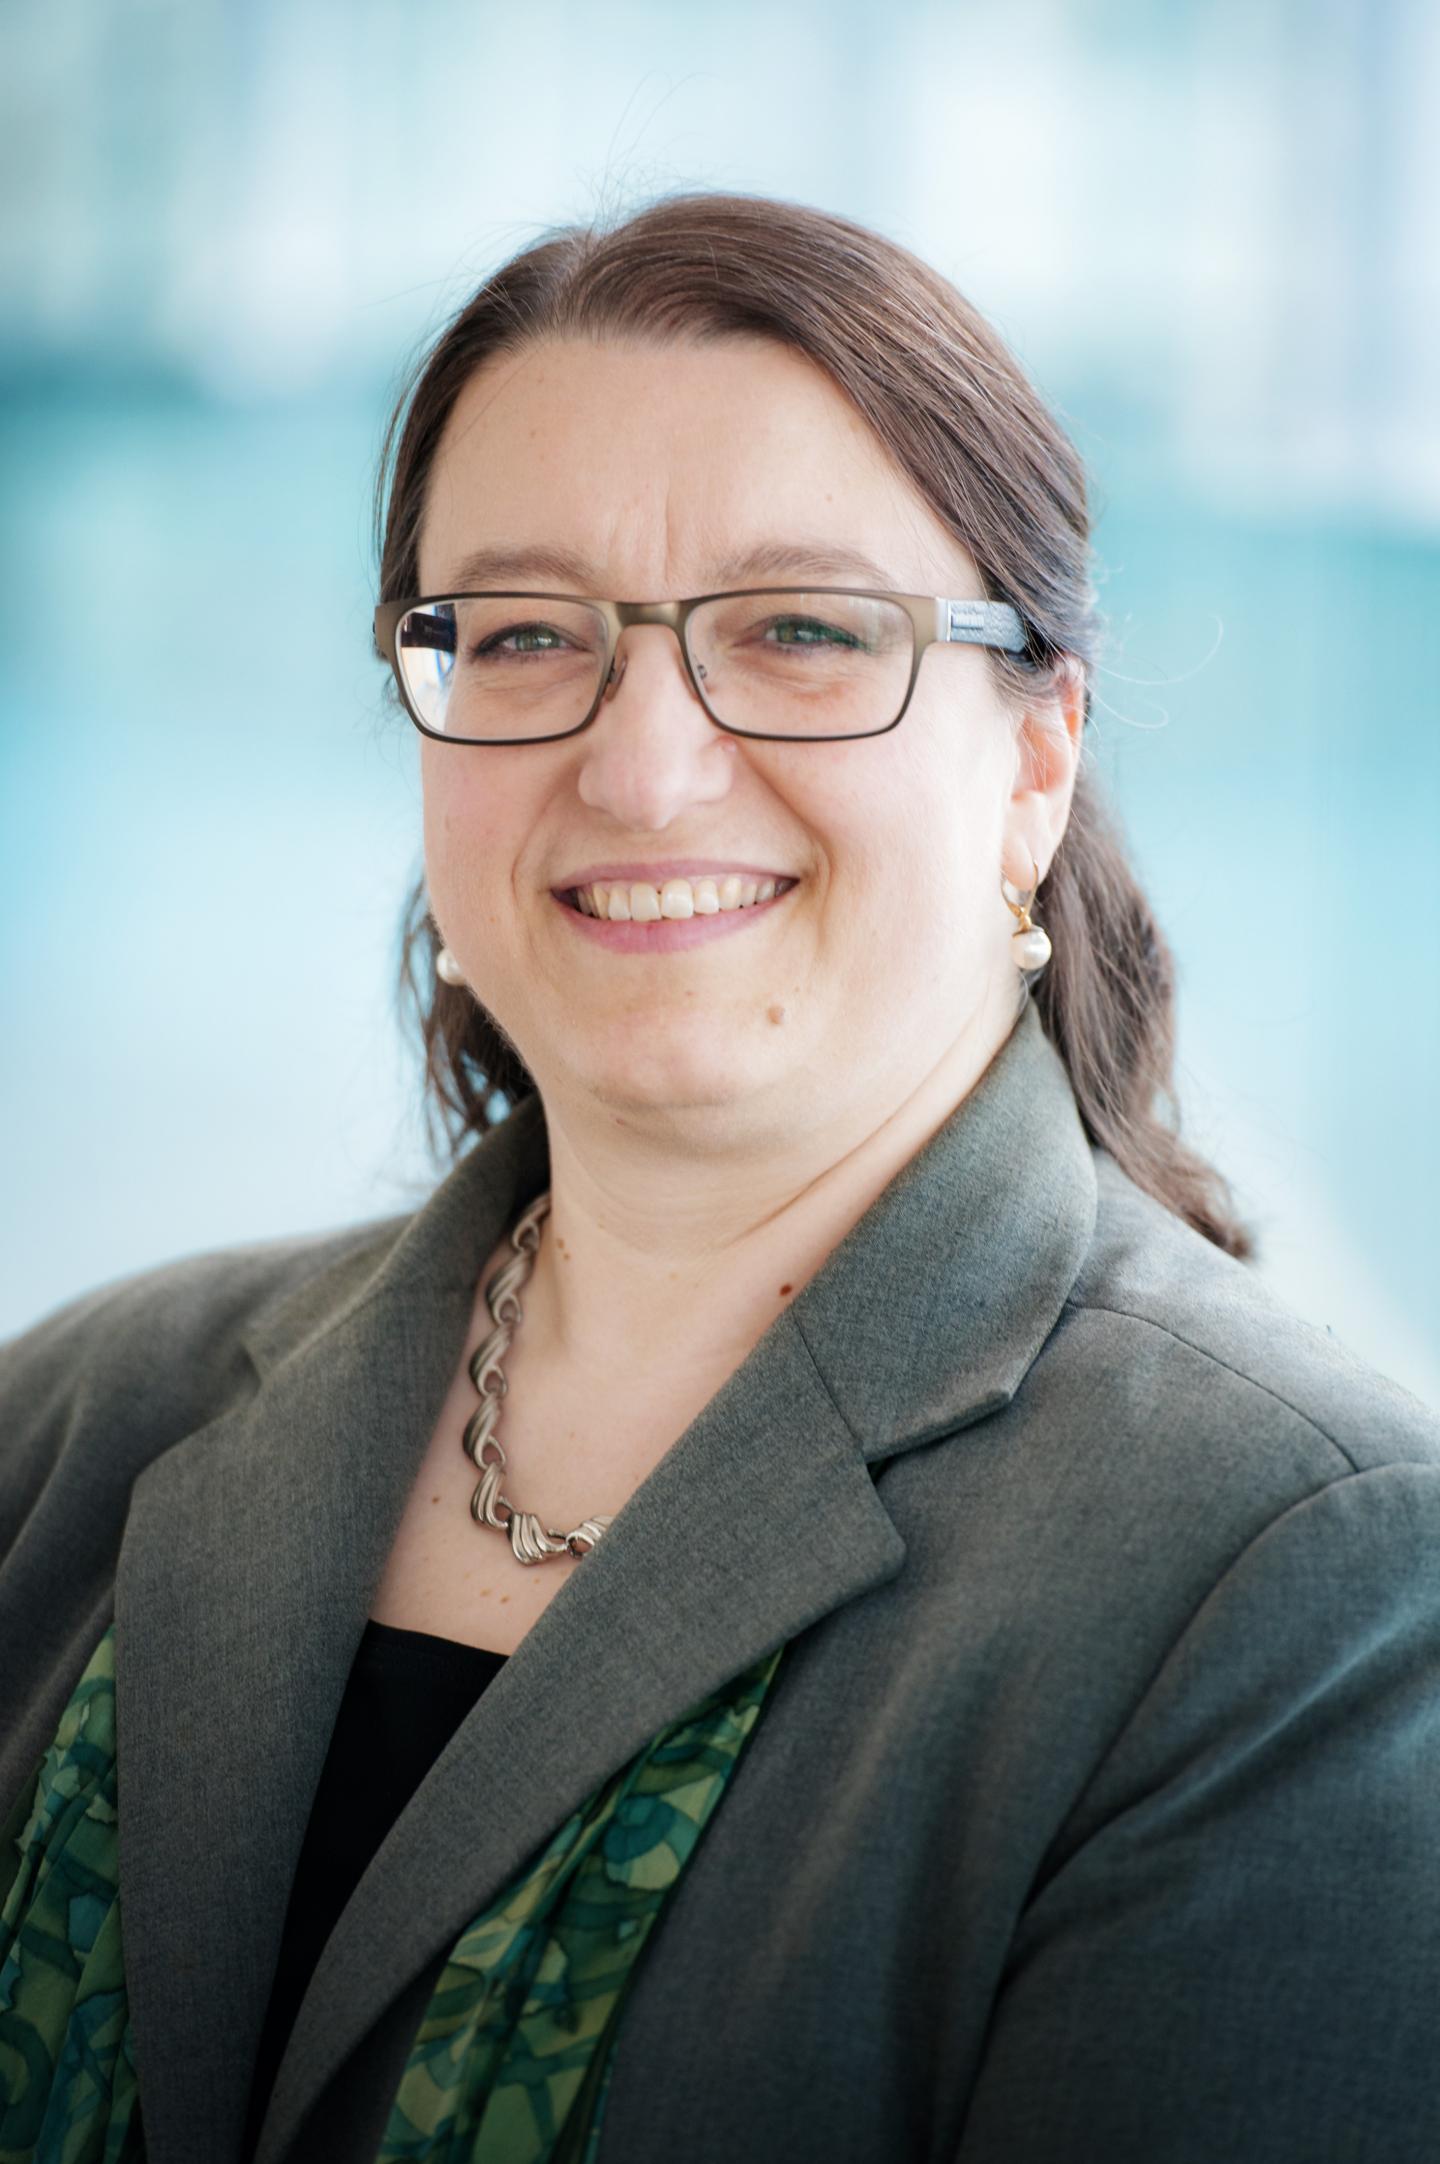 Professor Elizabeth Saewyc